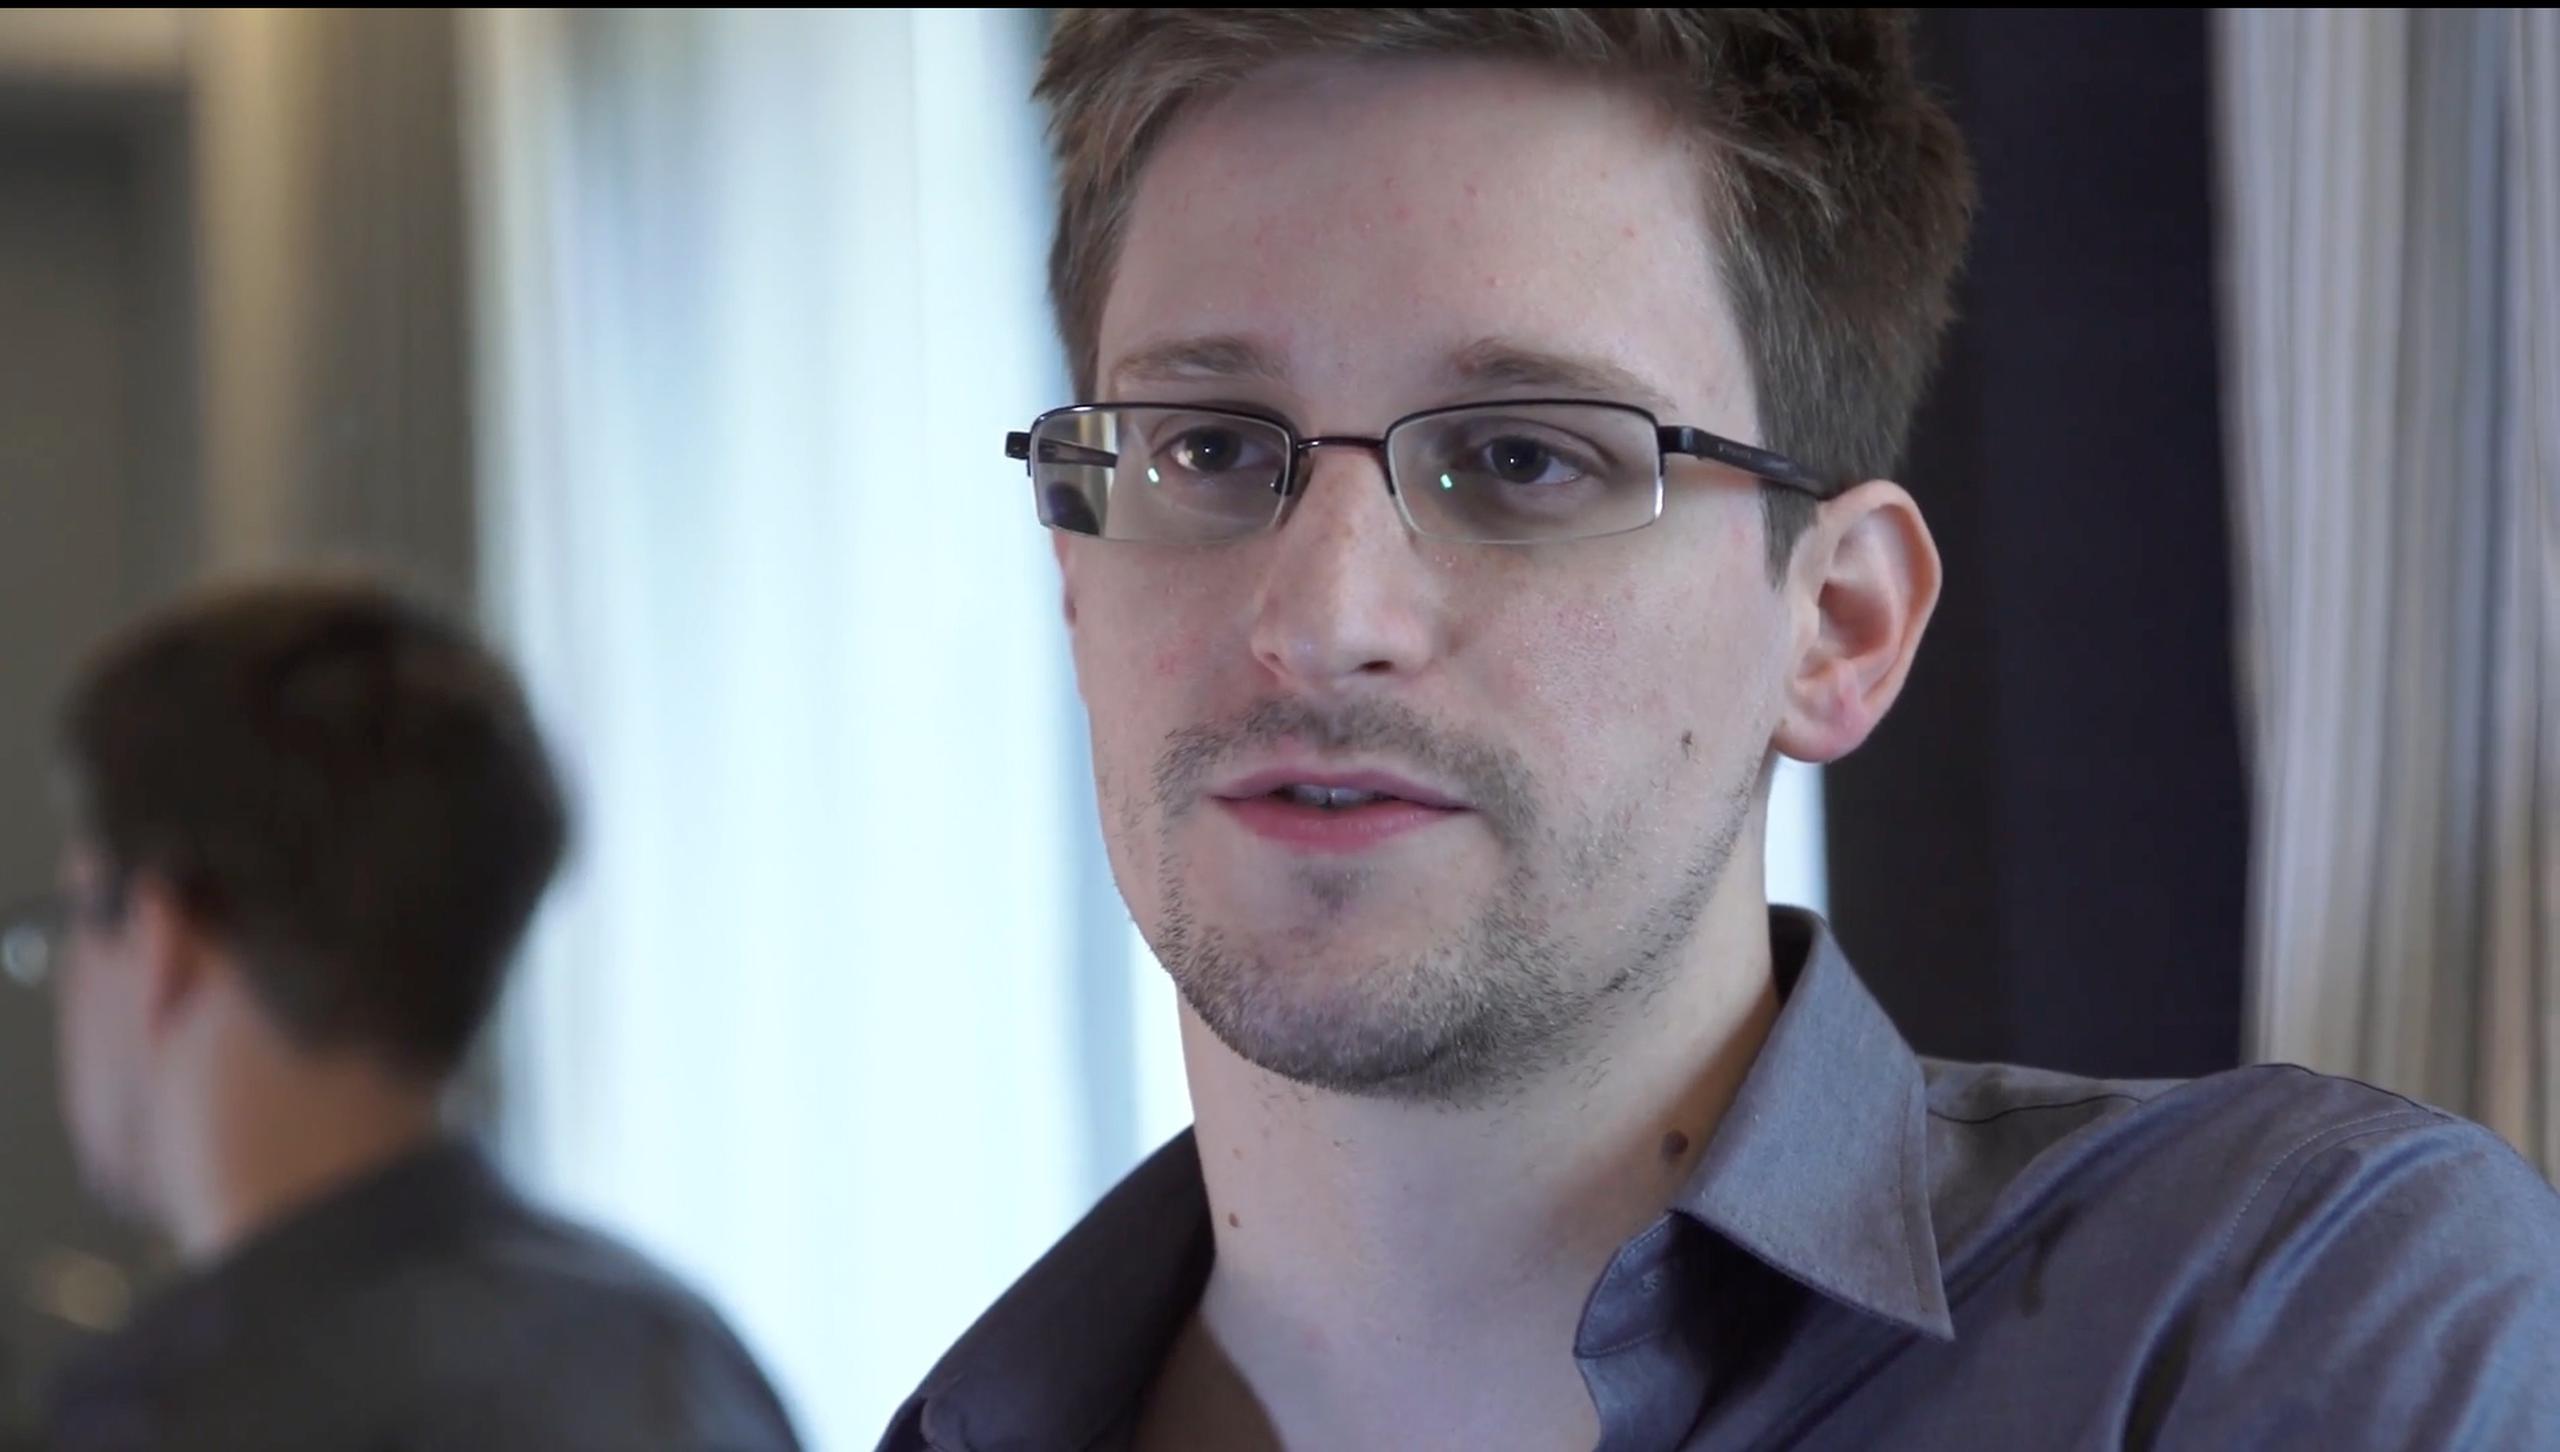 Snowden desea testificar ante el Congreso estadounidense para explicar las revelaciones de espionaje. (Archivo)